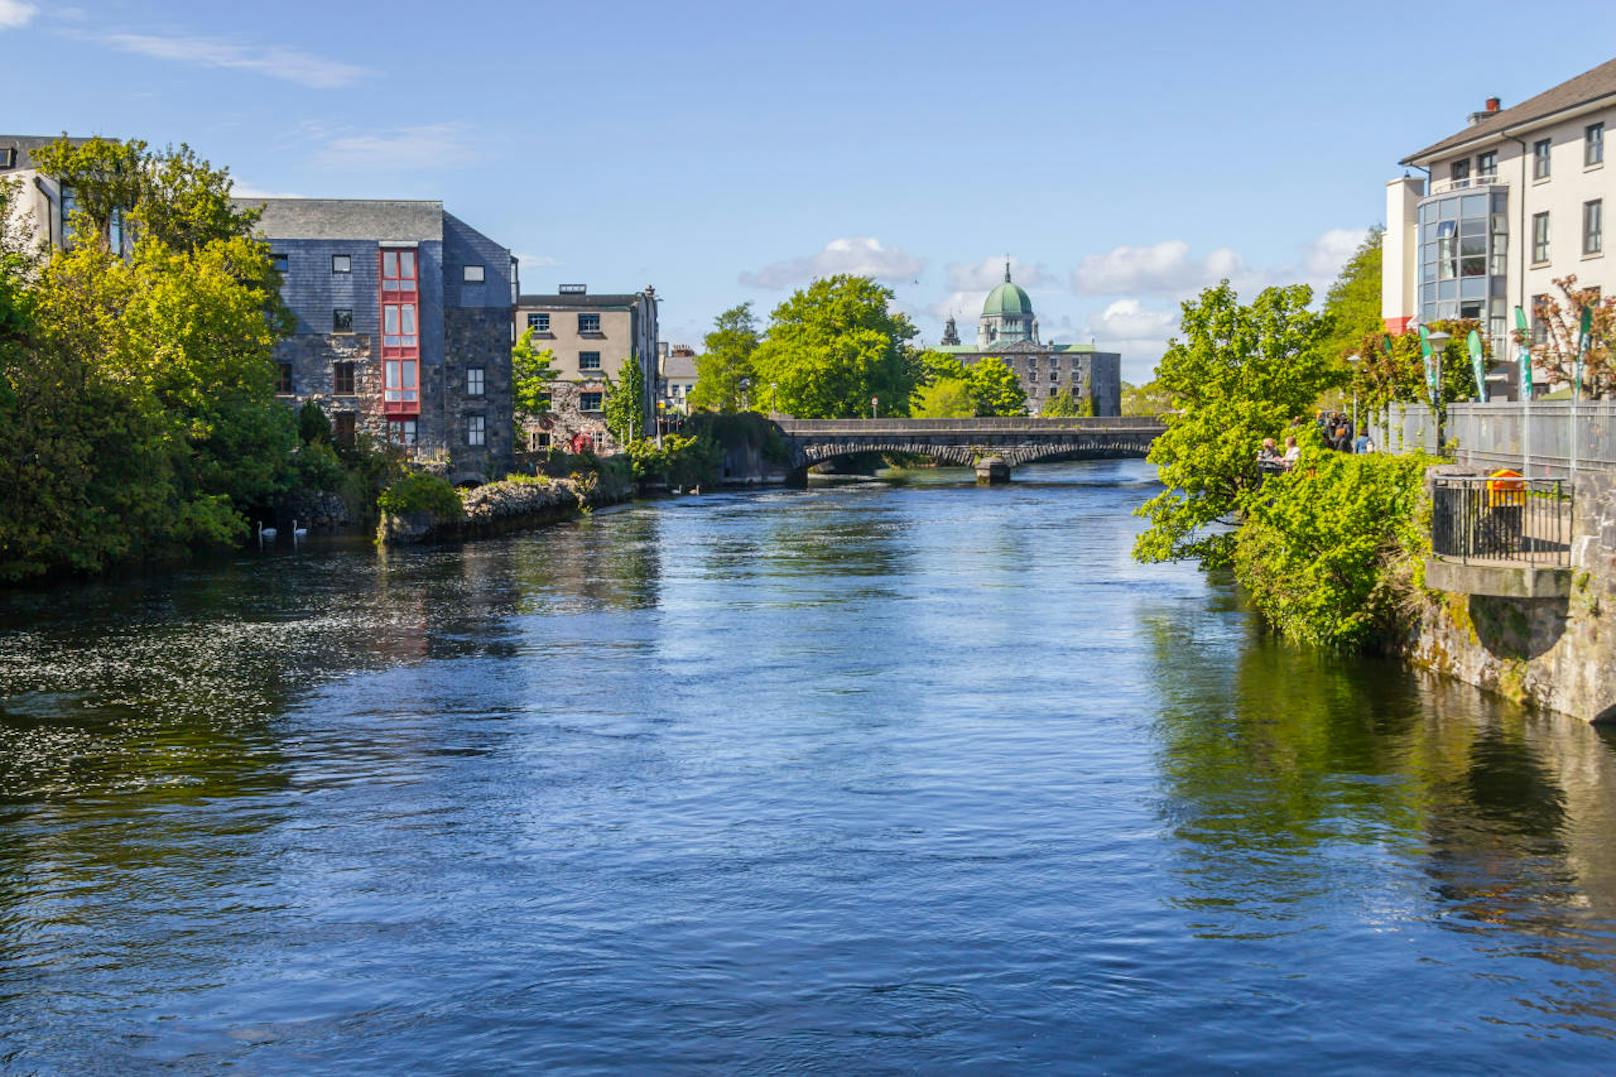 4. Galway, Irland

Galway ist bekannt für seine bunten Hausfassaden, die sich an der Uferpromenade harmonisch aneinander reihen. Die Region wird 2020 europäische Kulturhauptstadt sein. Dementsprechend geladen sieht der Eventkalender aus. Schauspiele, digitale Kunstwerke, Musik, Theater und Tanz wird es in den  Straßen der lebendigen Stadt zu sehen geben.